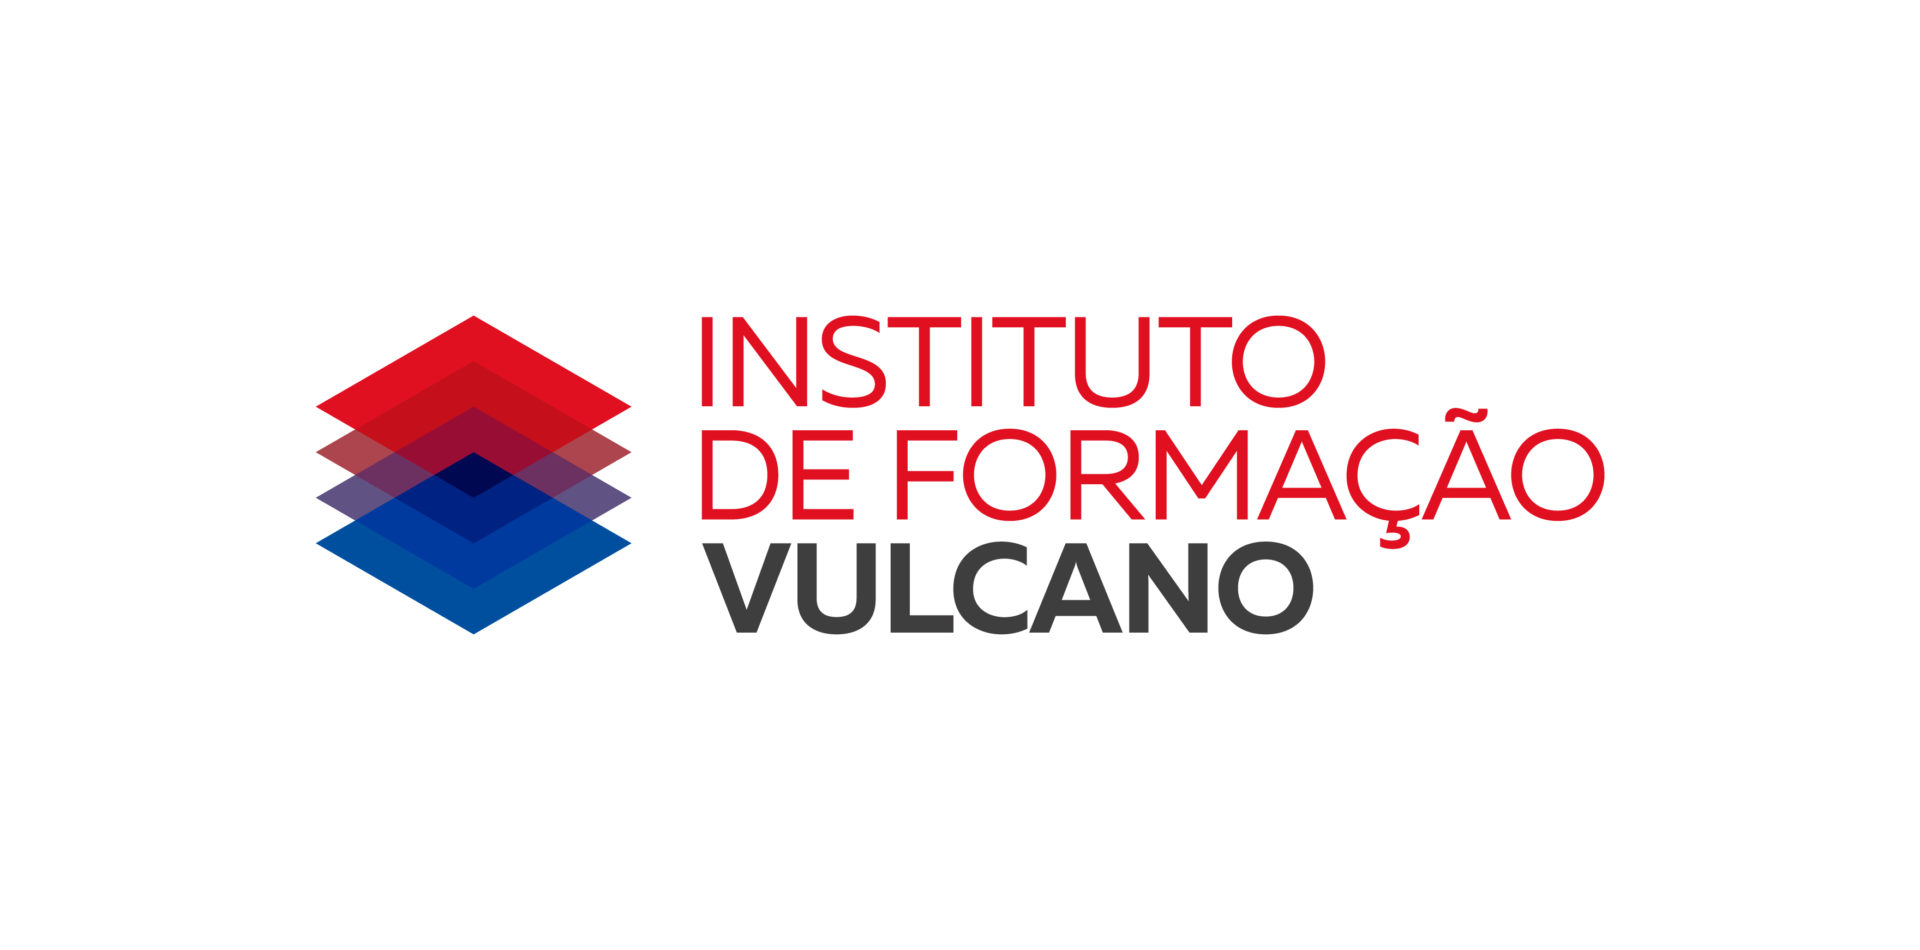 Instituto de Formação Vulcano lança curso de manuseamento de gases fluorados